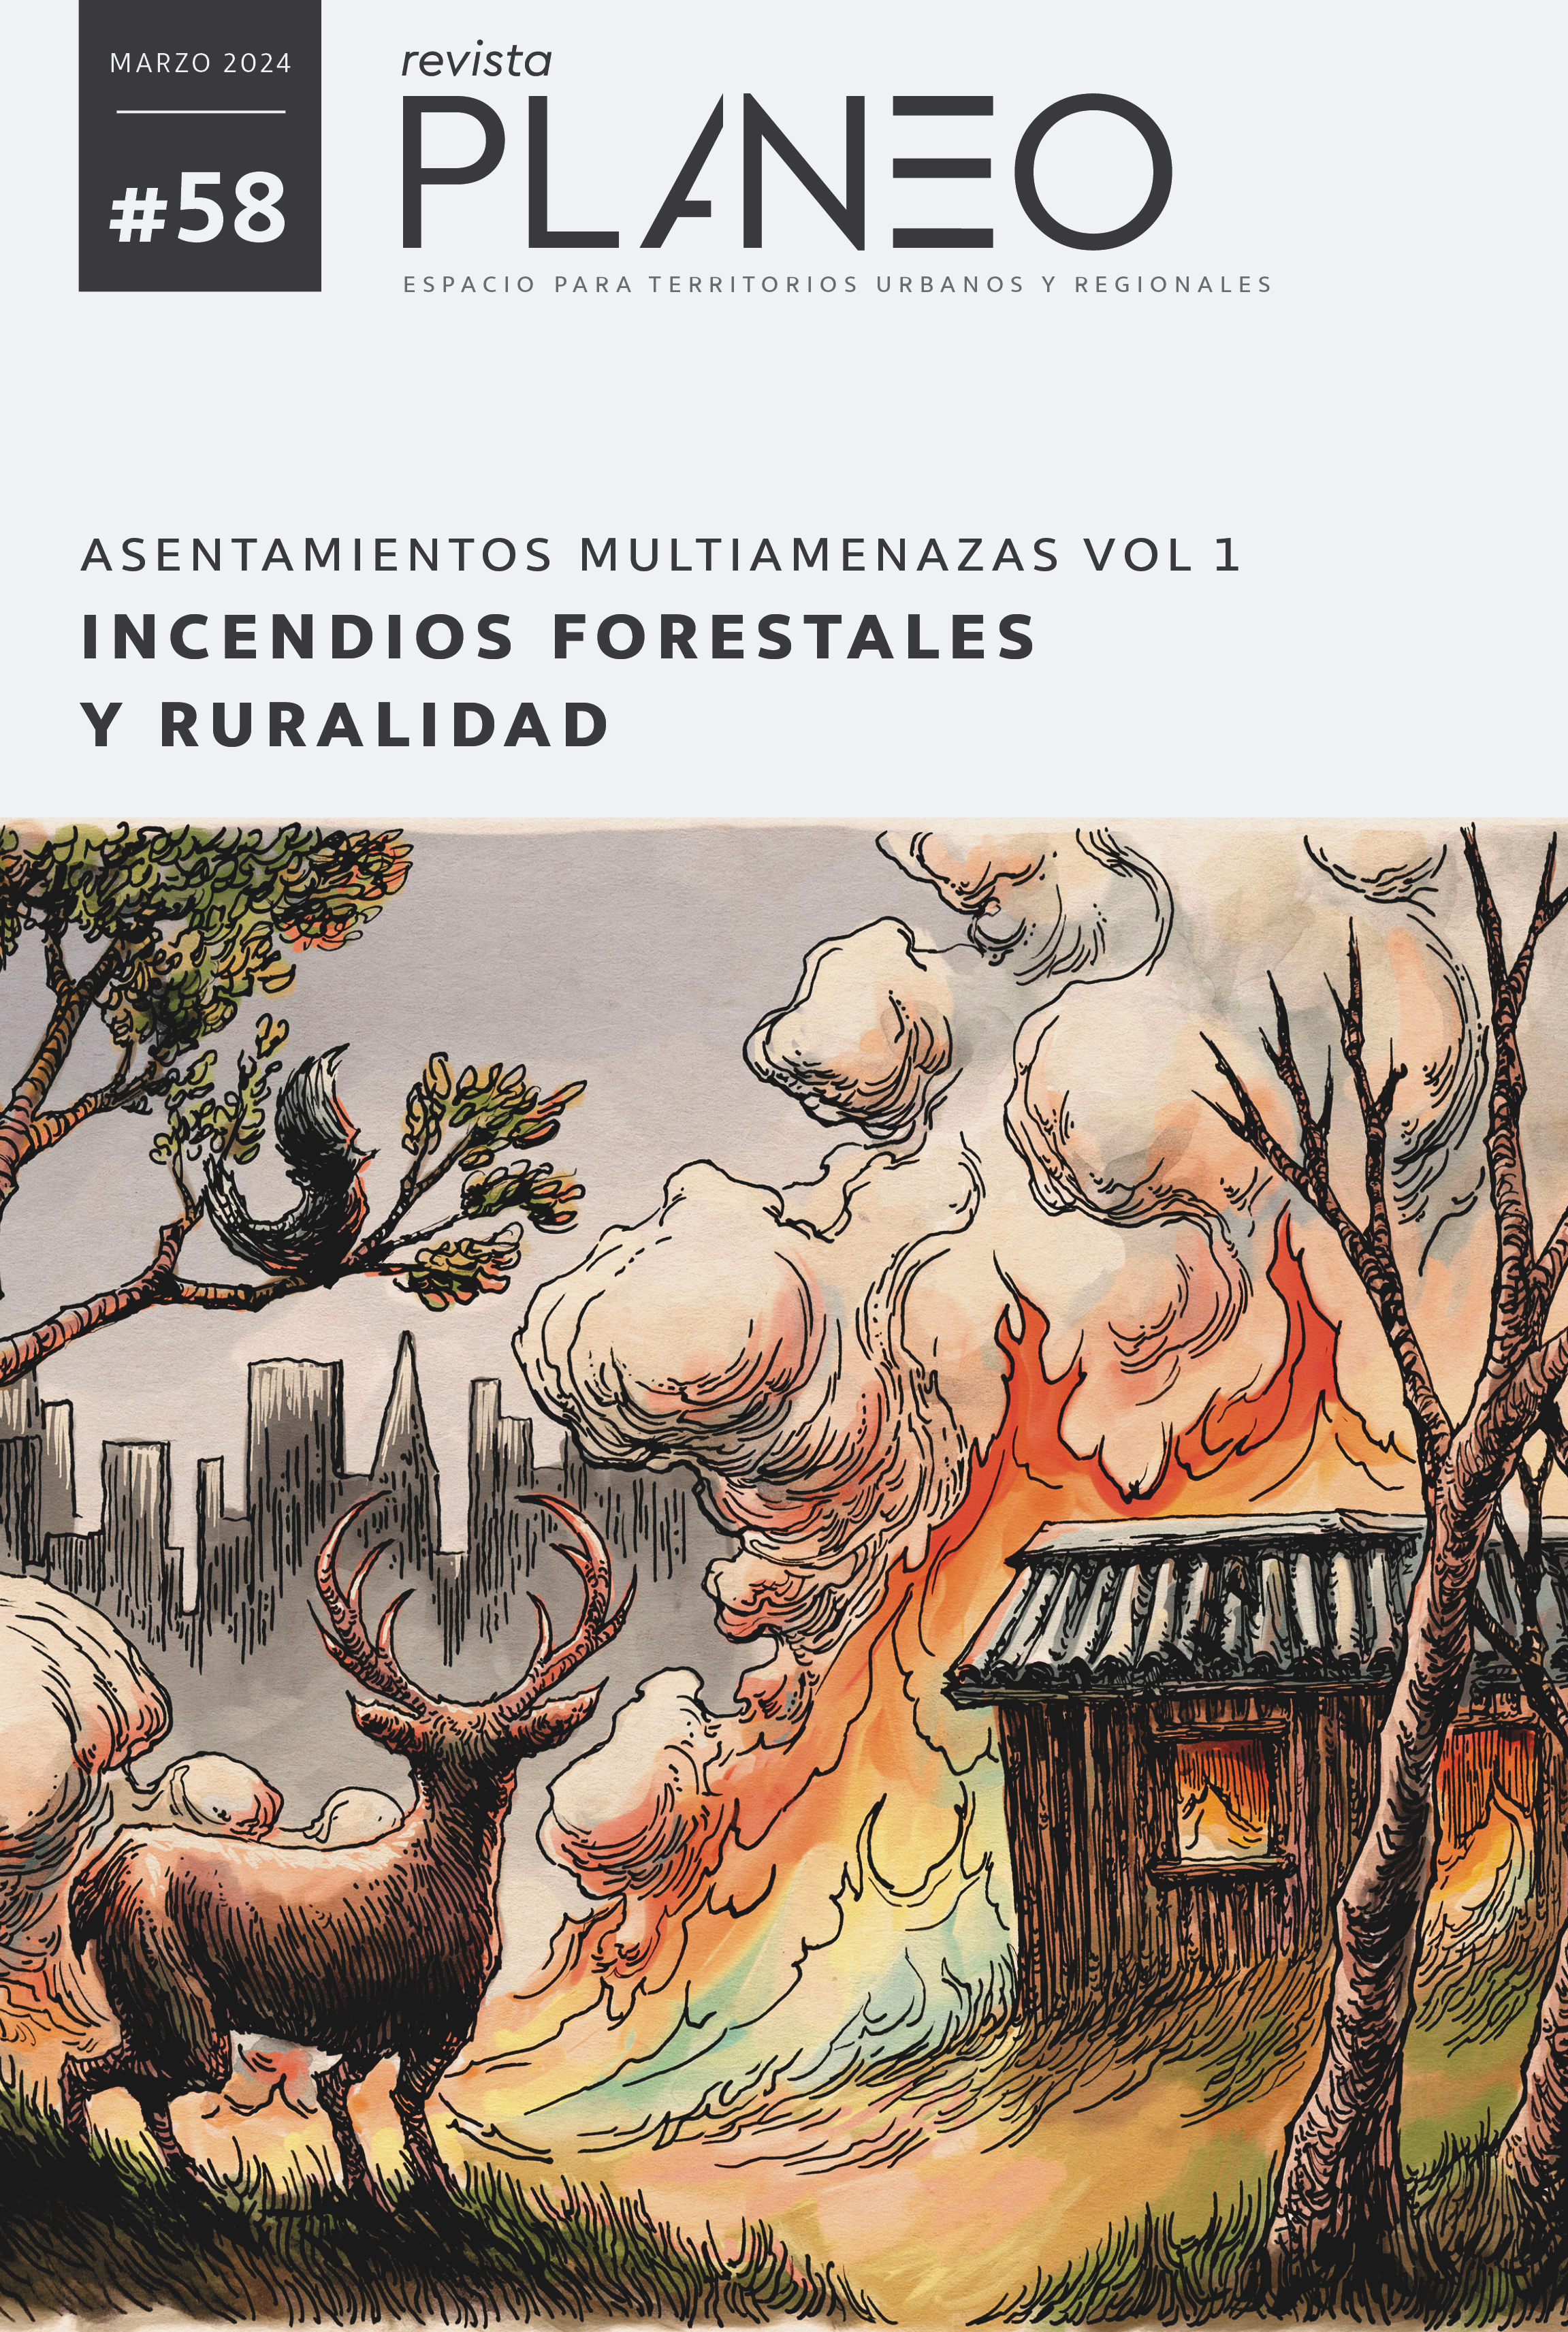 PLANEO 58 | Asentamientos multiamenazas Vol. 1: Incendios forestales y ruralidad | MARZO 2024